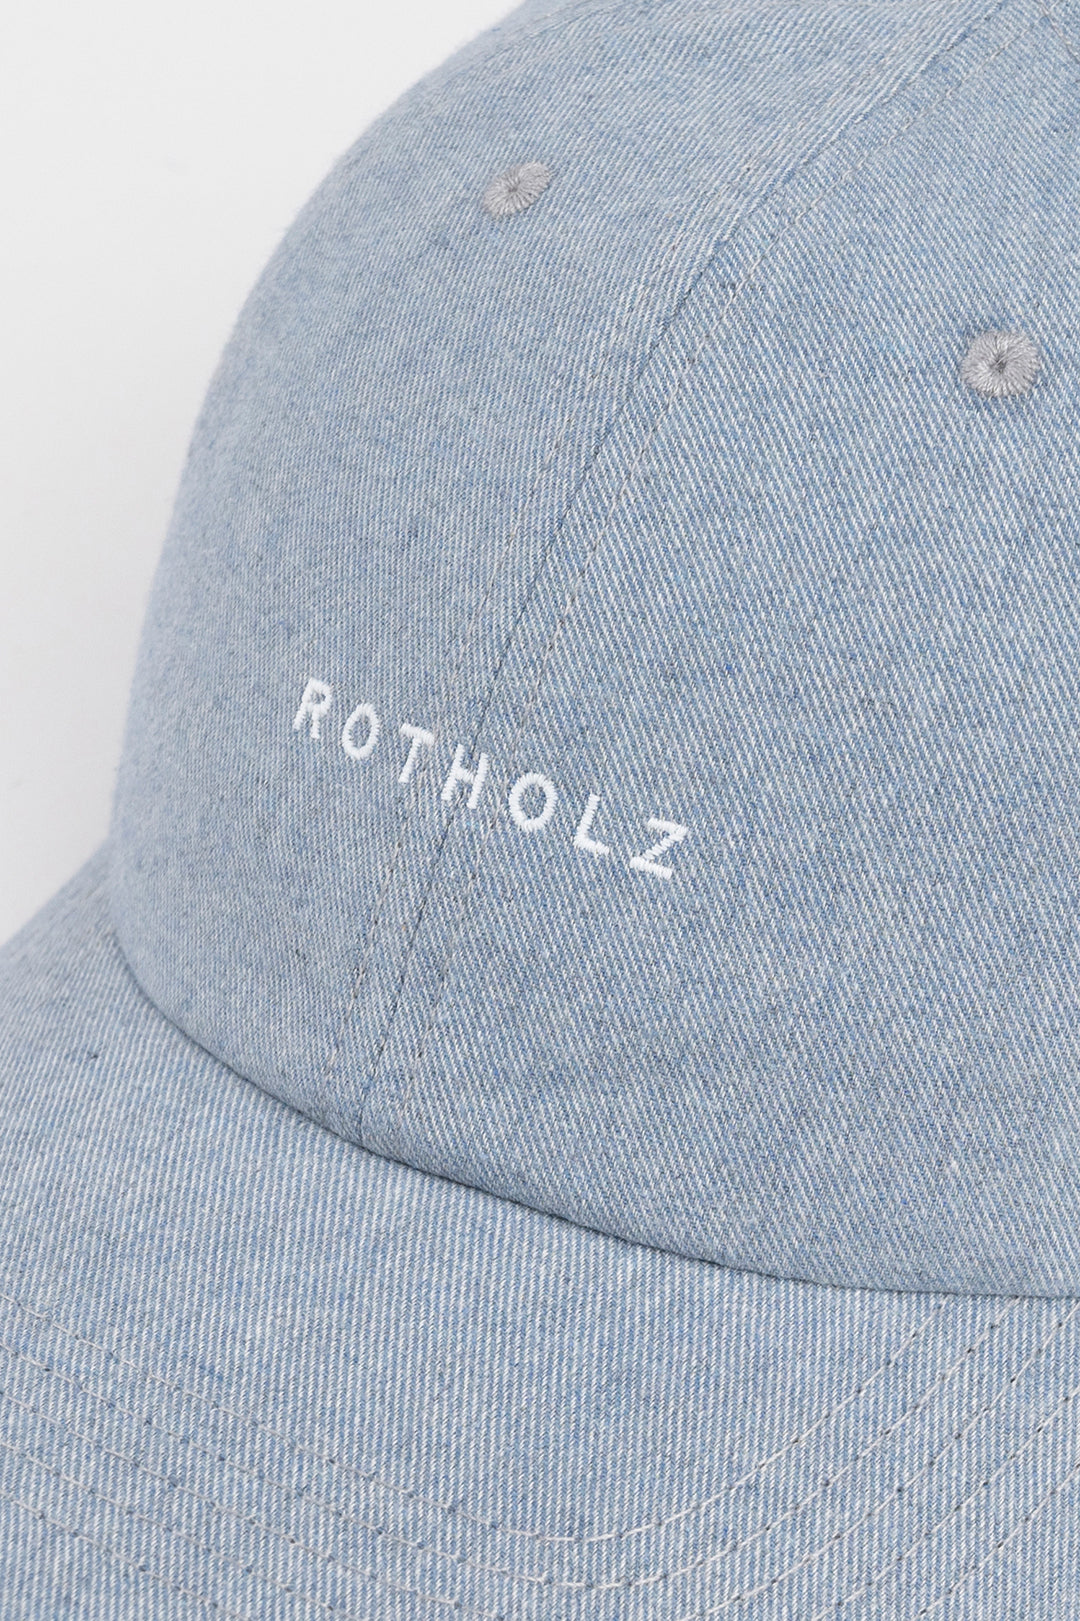 Blau-graue Cap Logo aus 100% Bio-Baumwolle von Rotholz